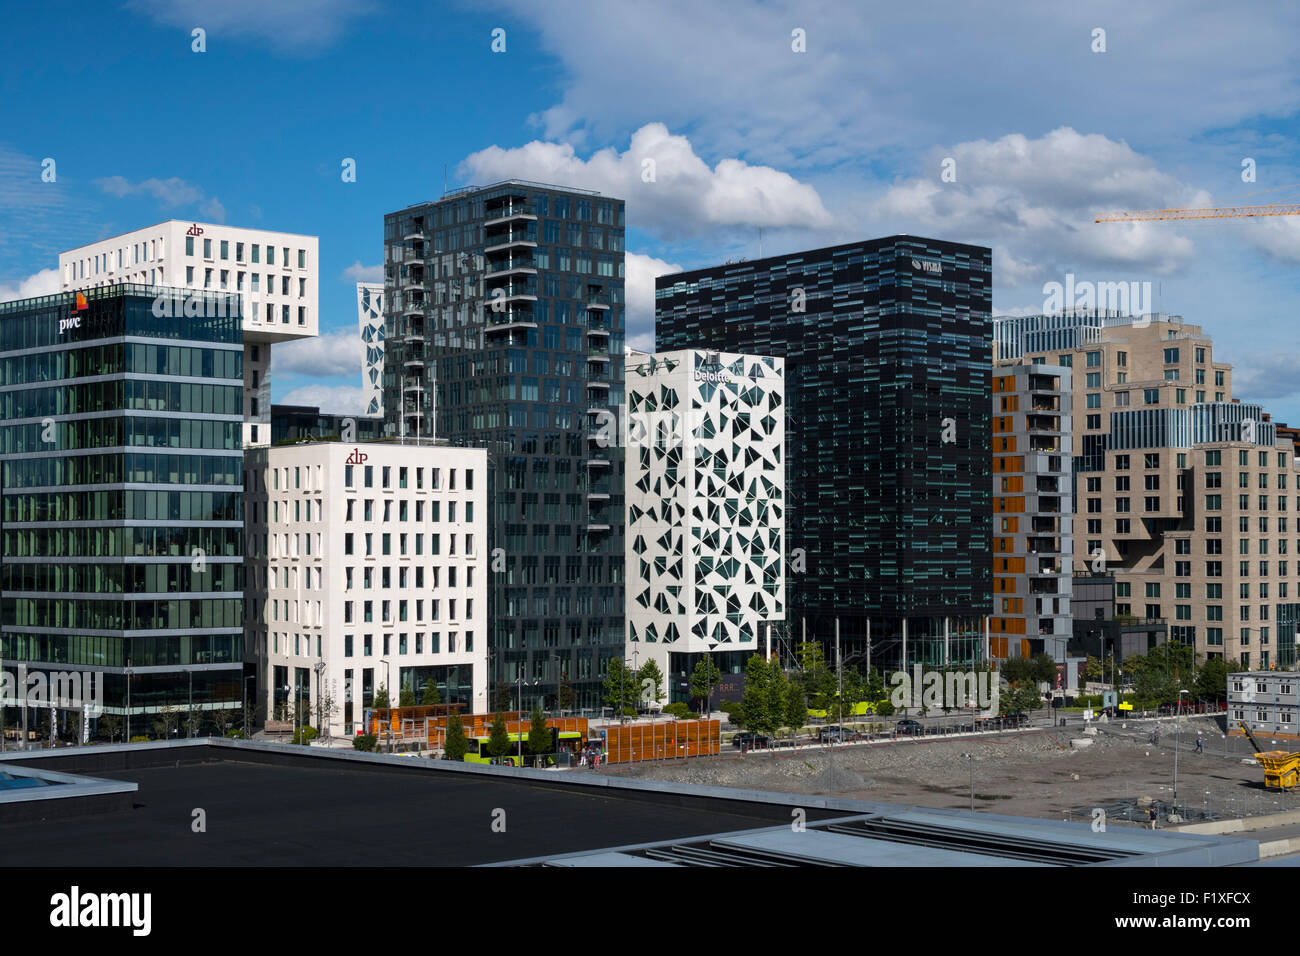 Les bâtiments d'architecture moderne à Oslo, Norvège Banque D'Images